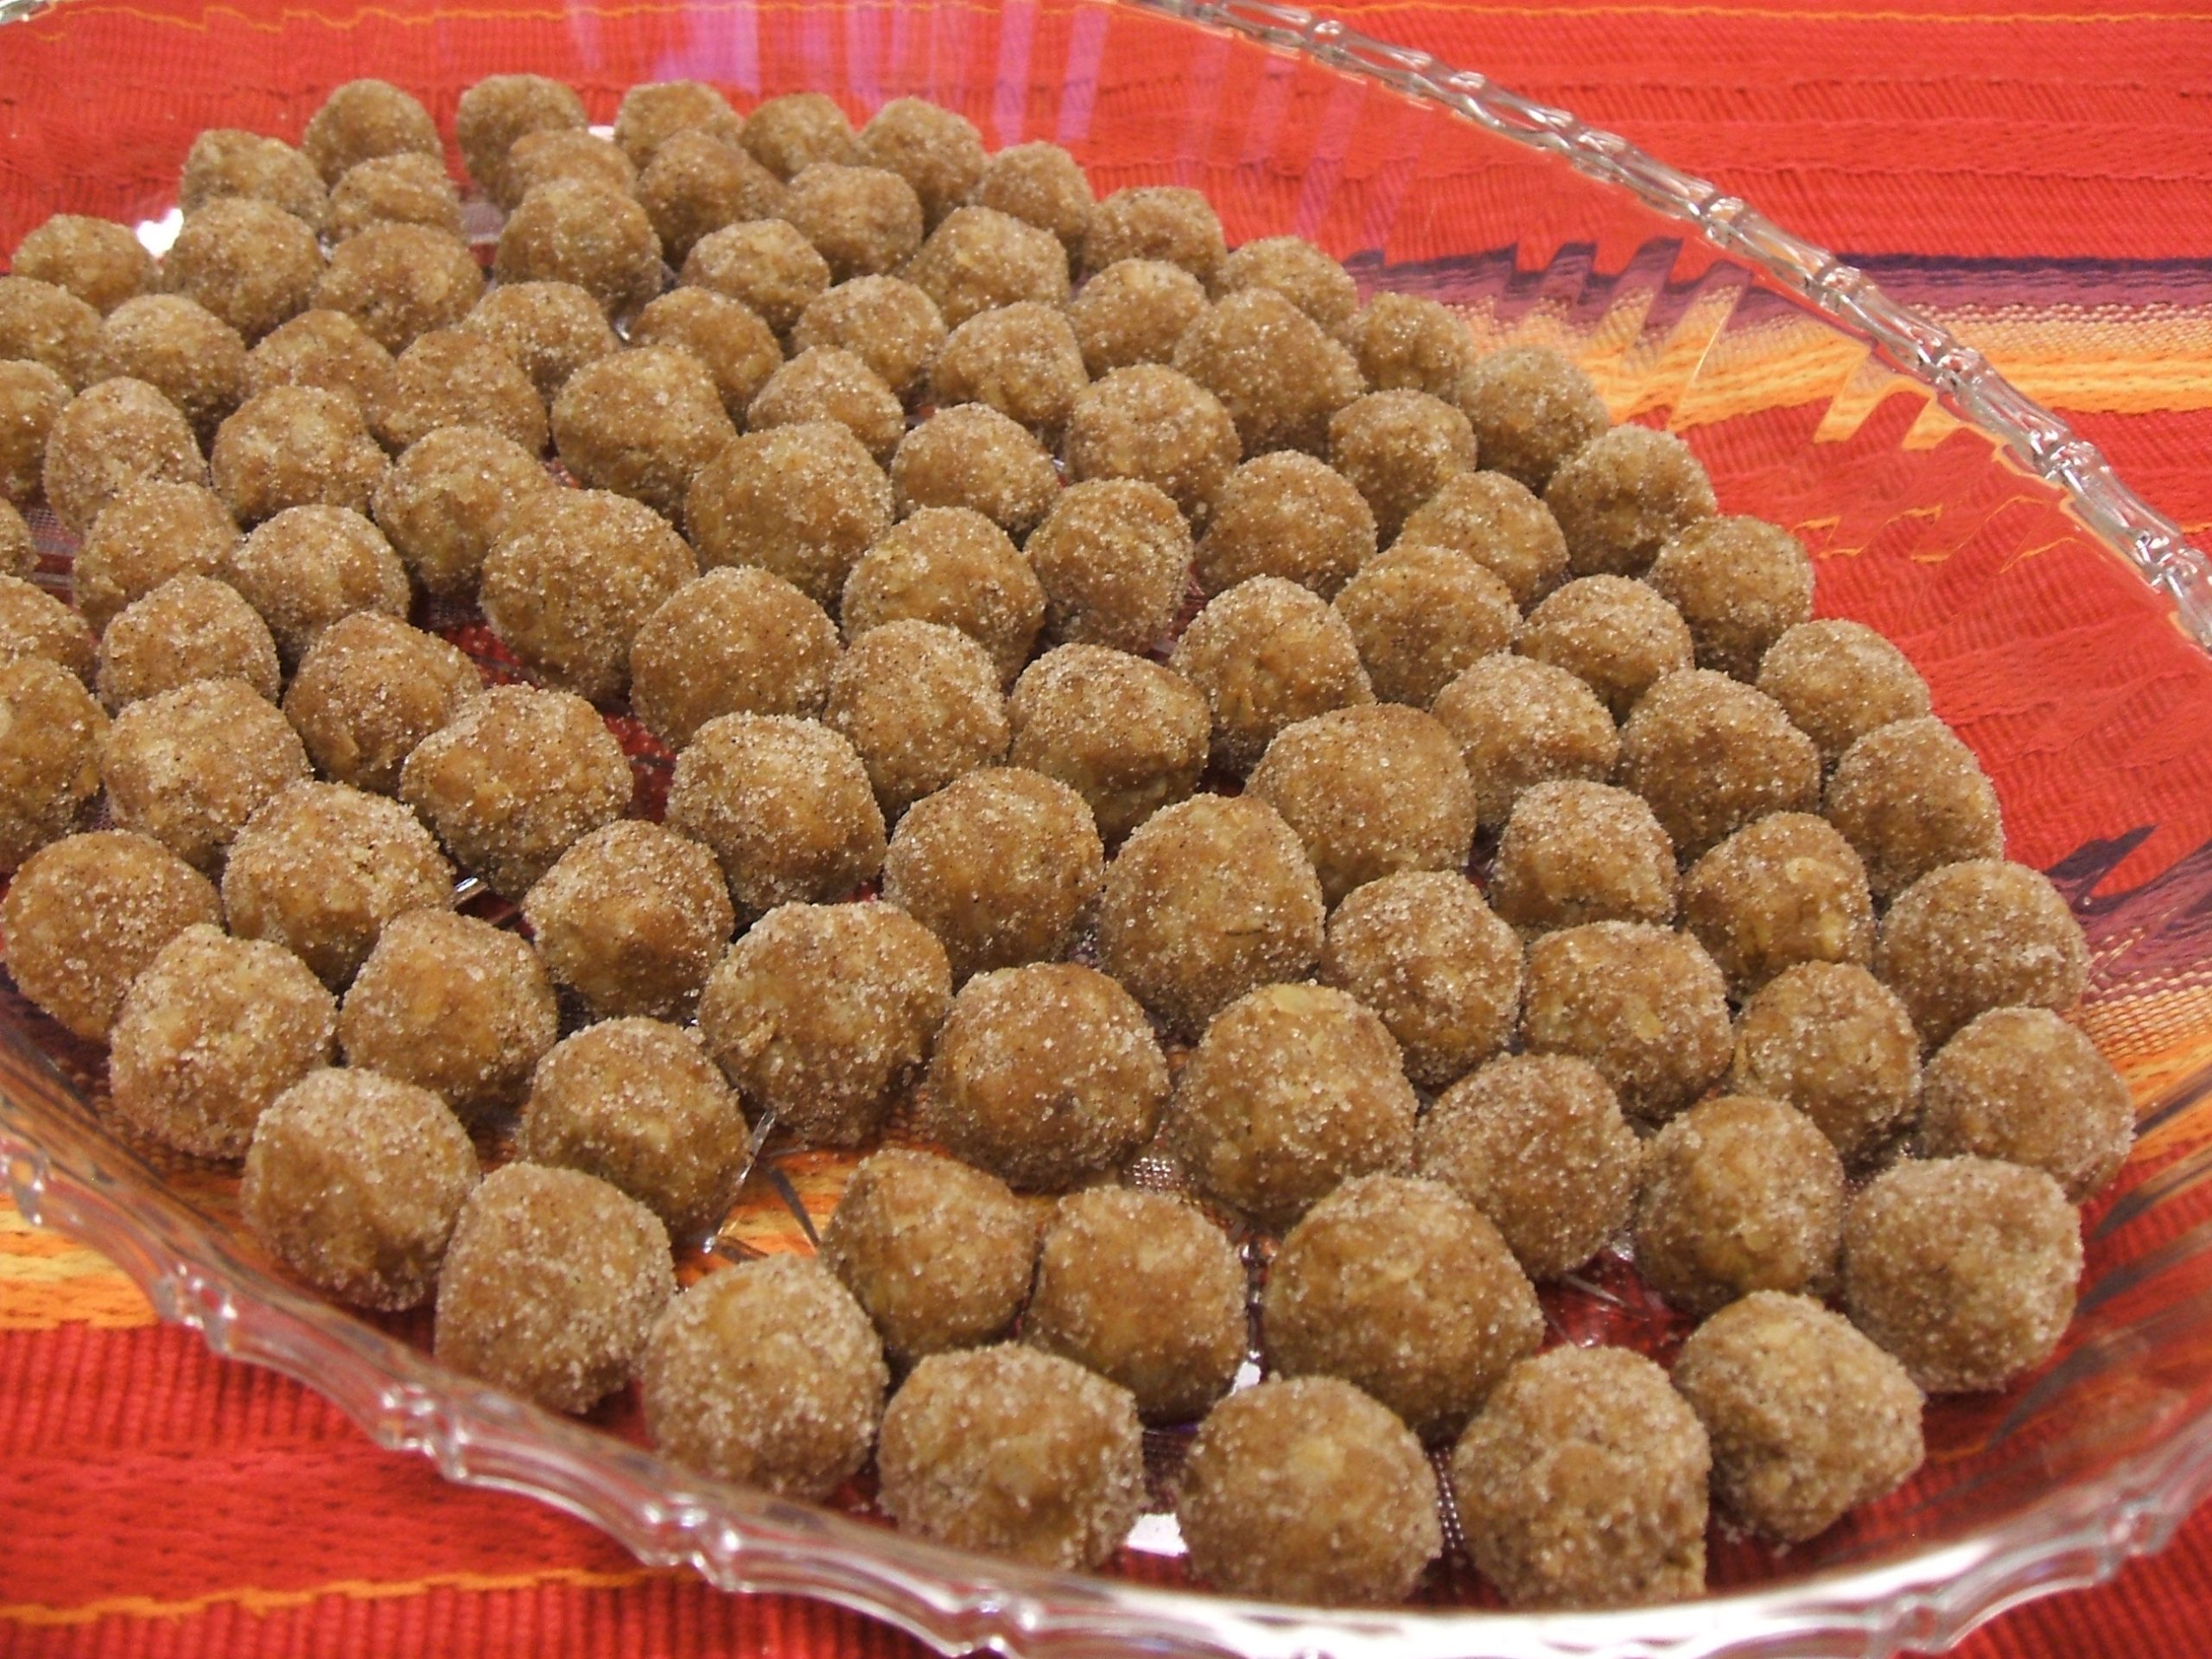 A platter of peanut butter oatmeal candy balls